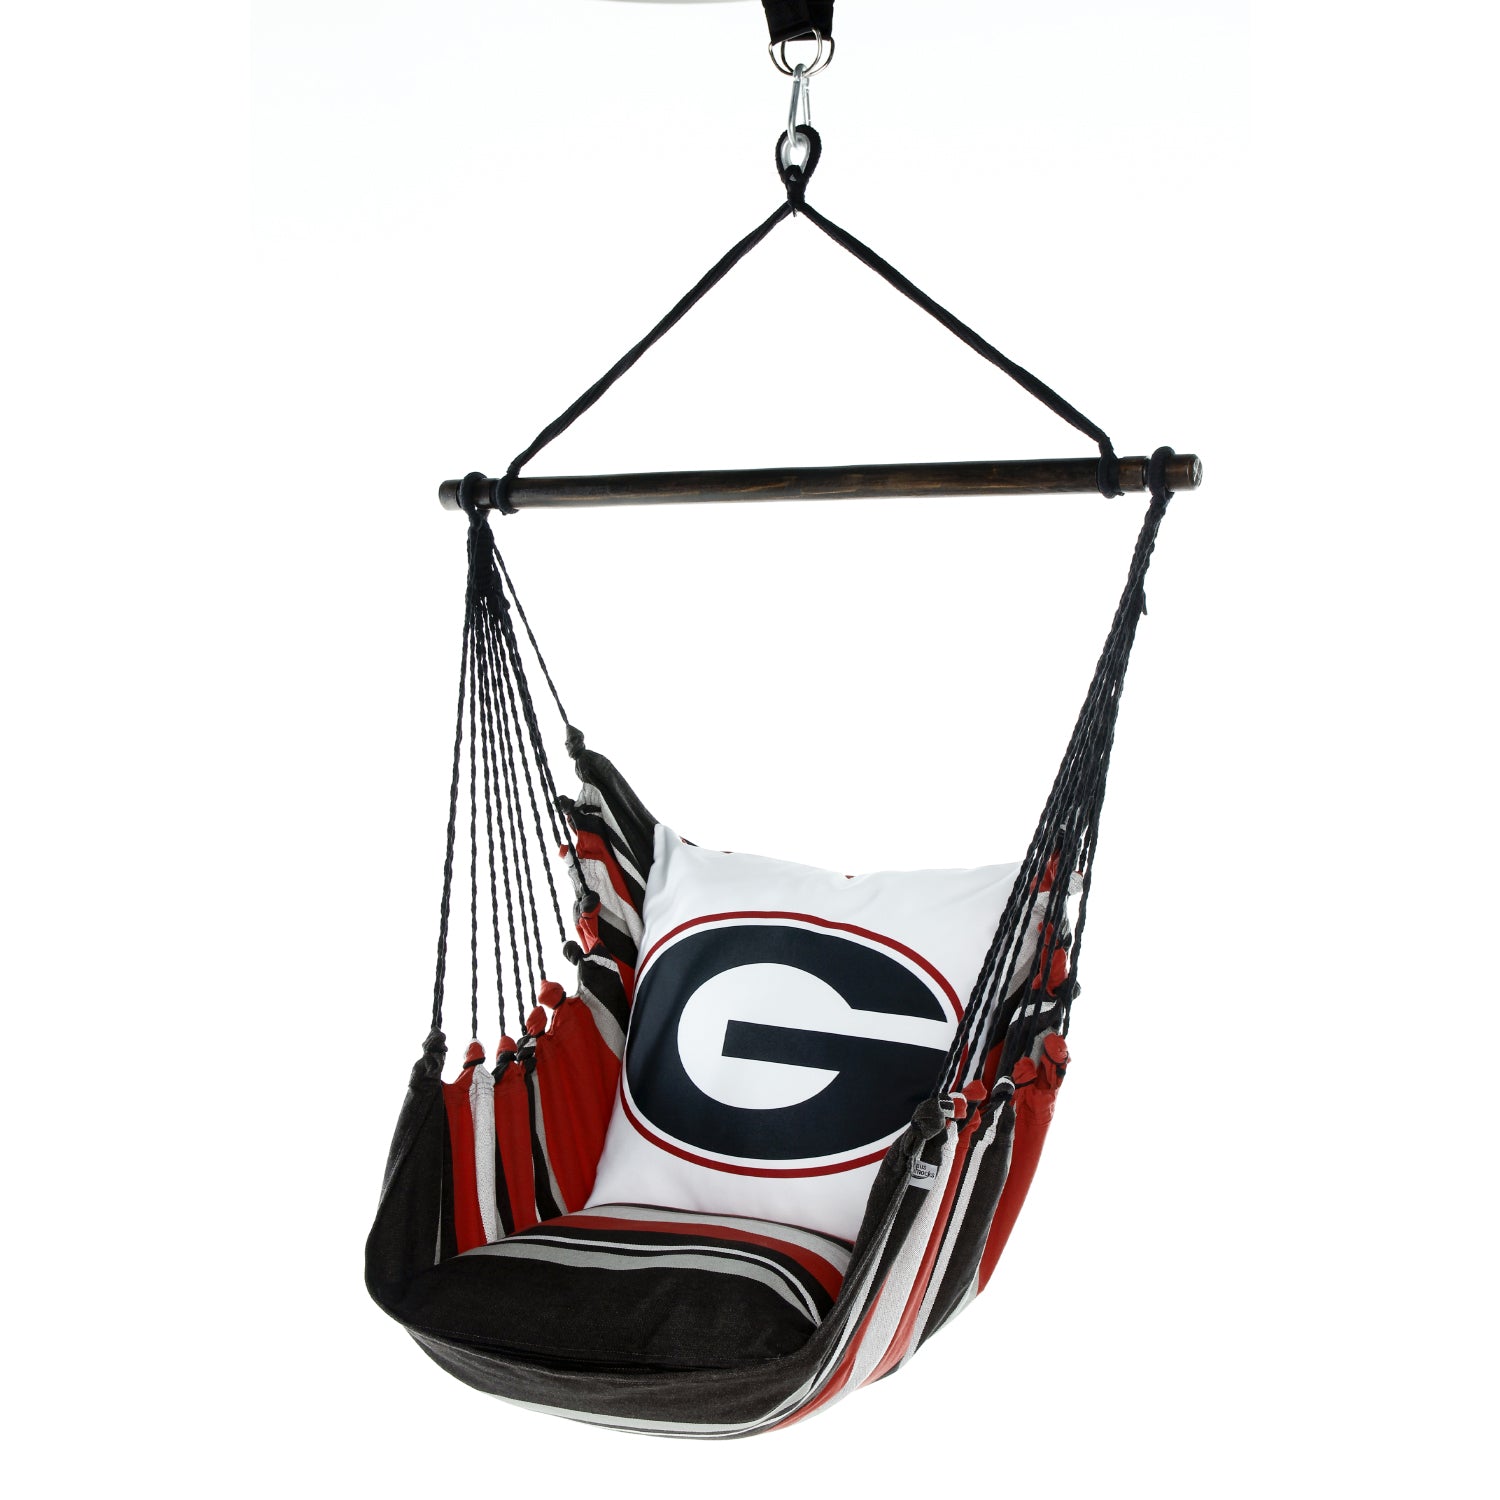  UGA Georgia bulldogs hammock hanging chair swing